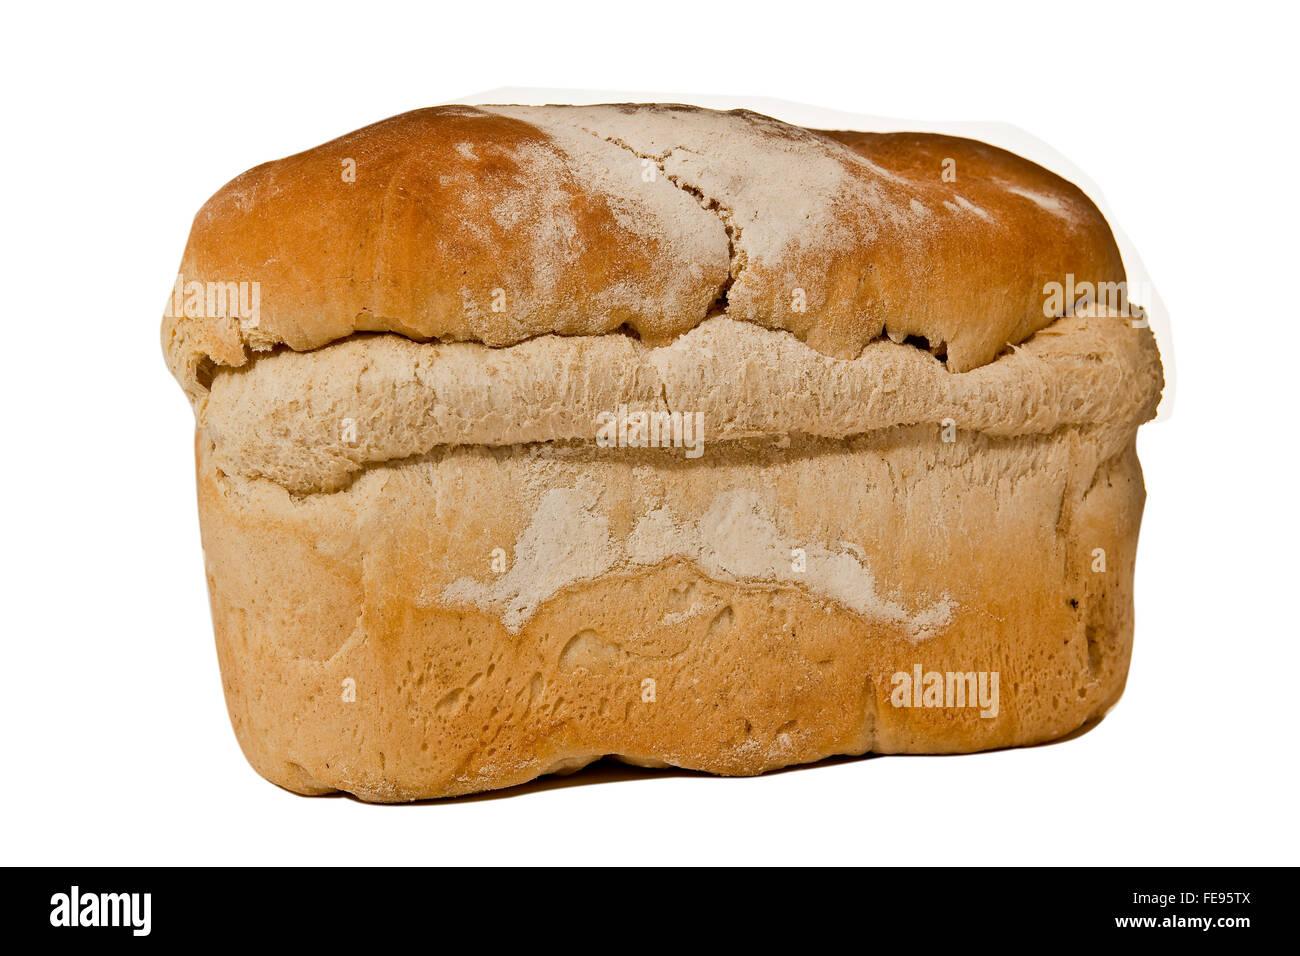 Fresh baked homemade White Bread Stock Photo